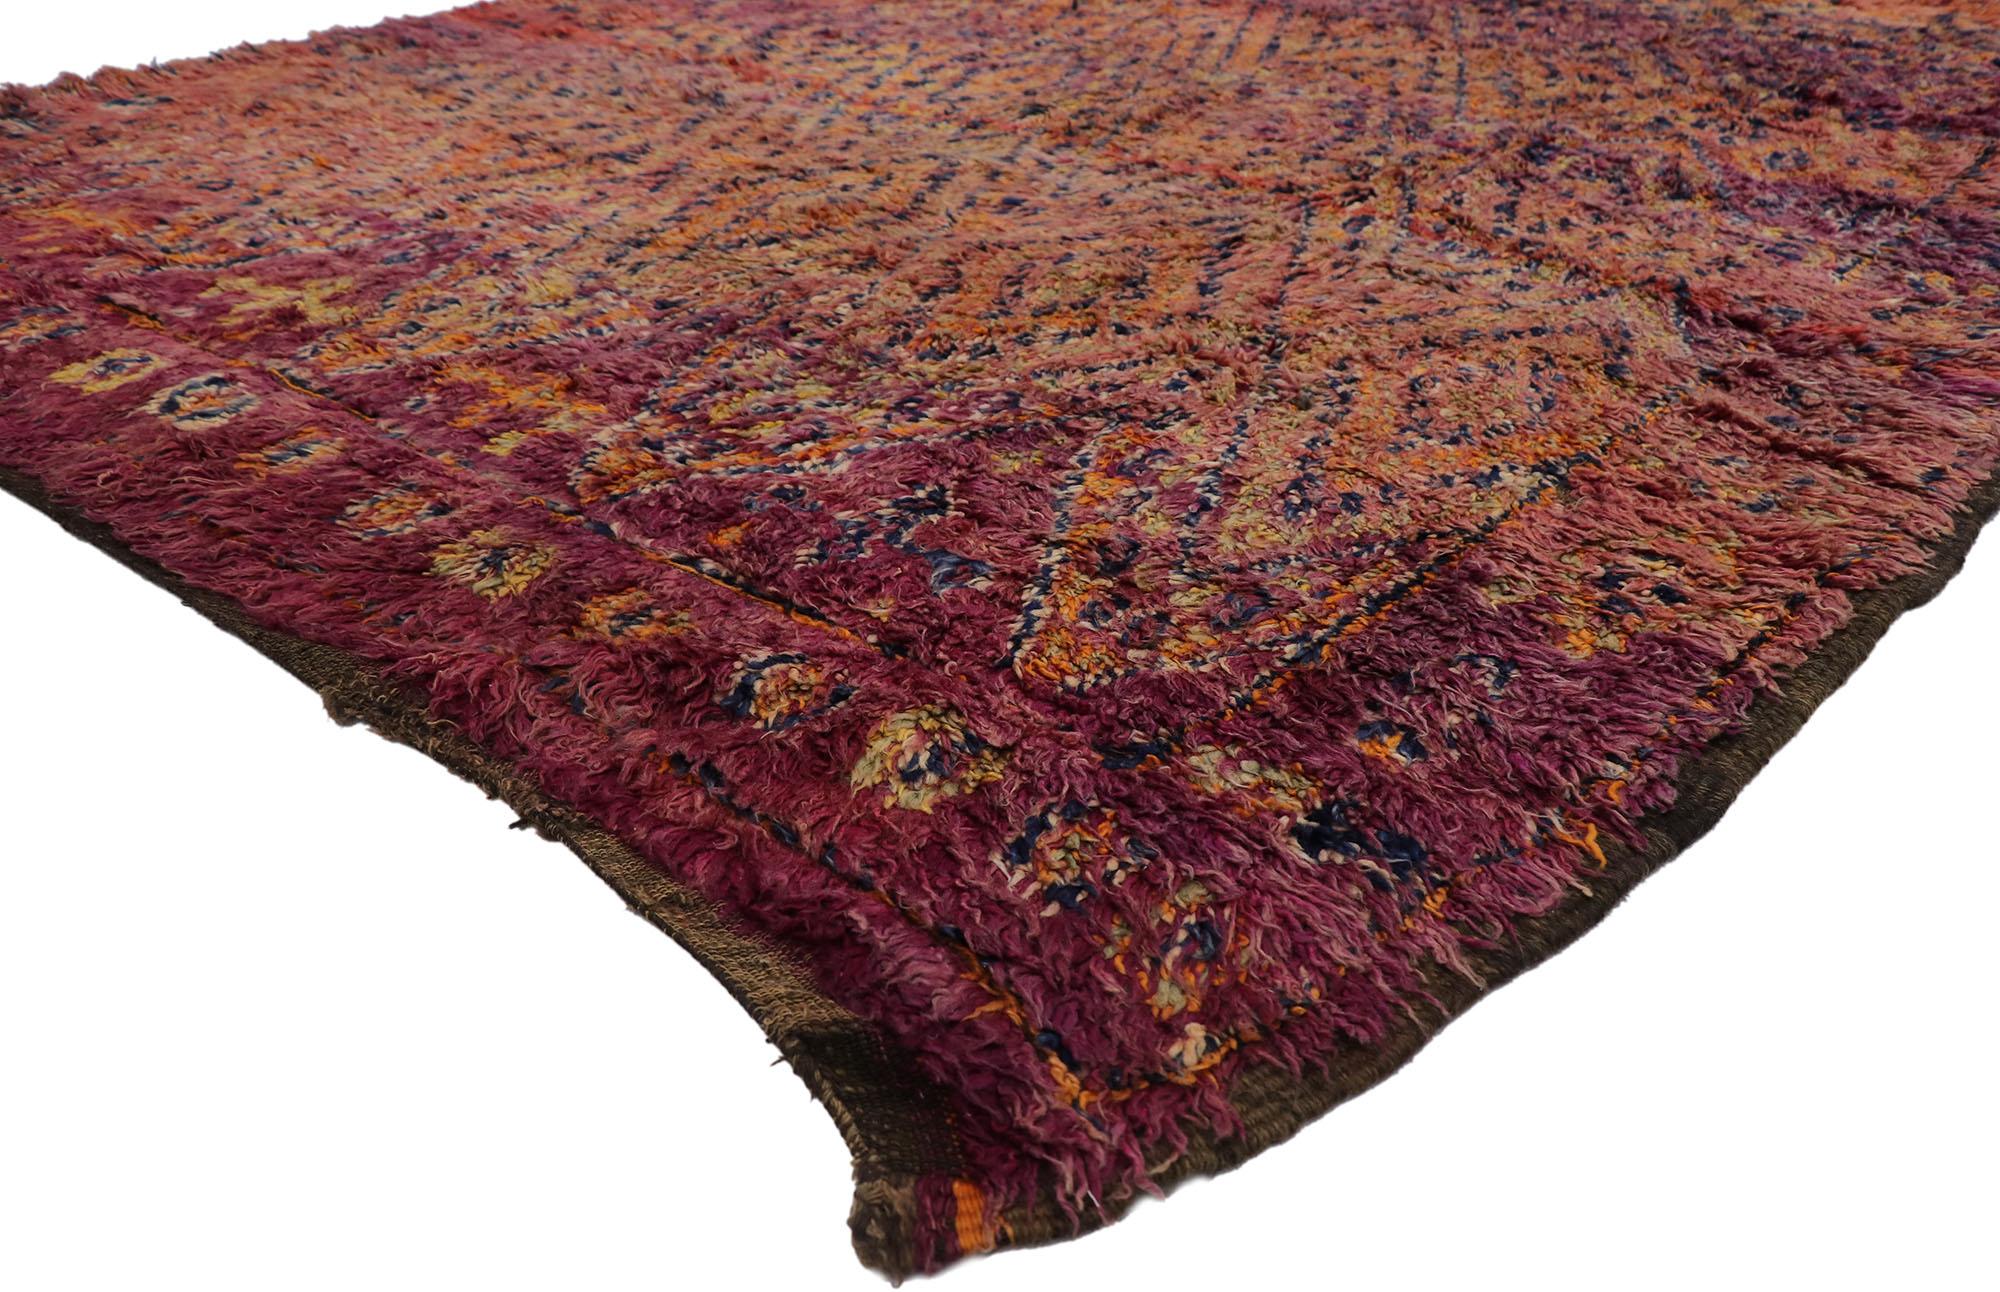 21312 Tapis marocain Vintage Beni MGuild, 07'02 x 09'00.
Ce tapis marocain vintage Beni MGuild en laine nouée à la main allie le luxe moderne et le bohème sulfureux. Le design détaillé des diamants et les couleurs atmosphériques tissées dans cette